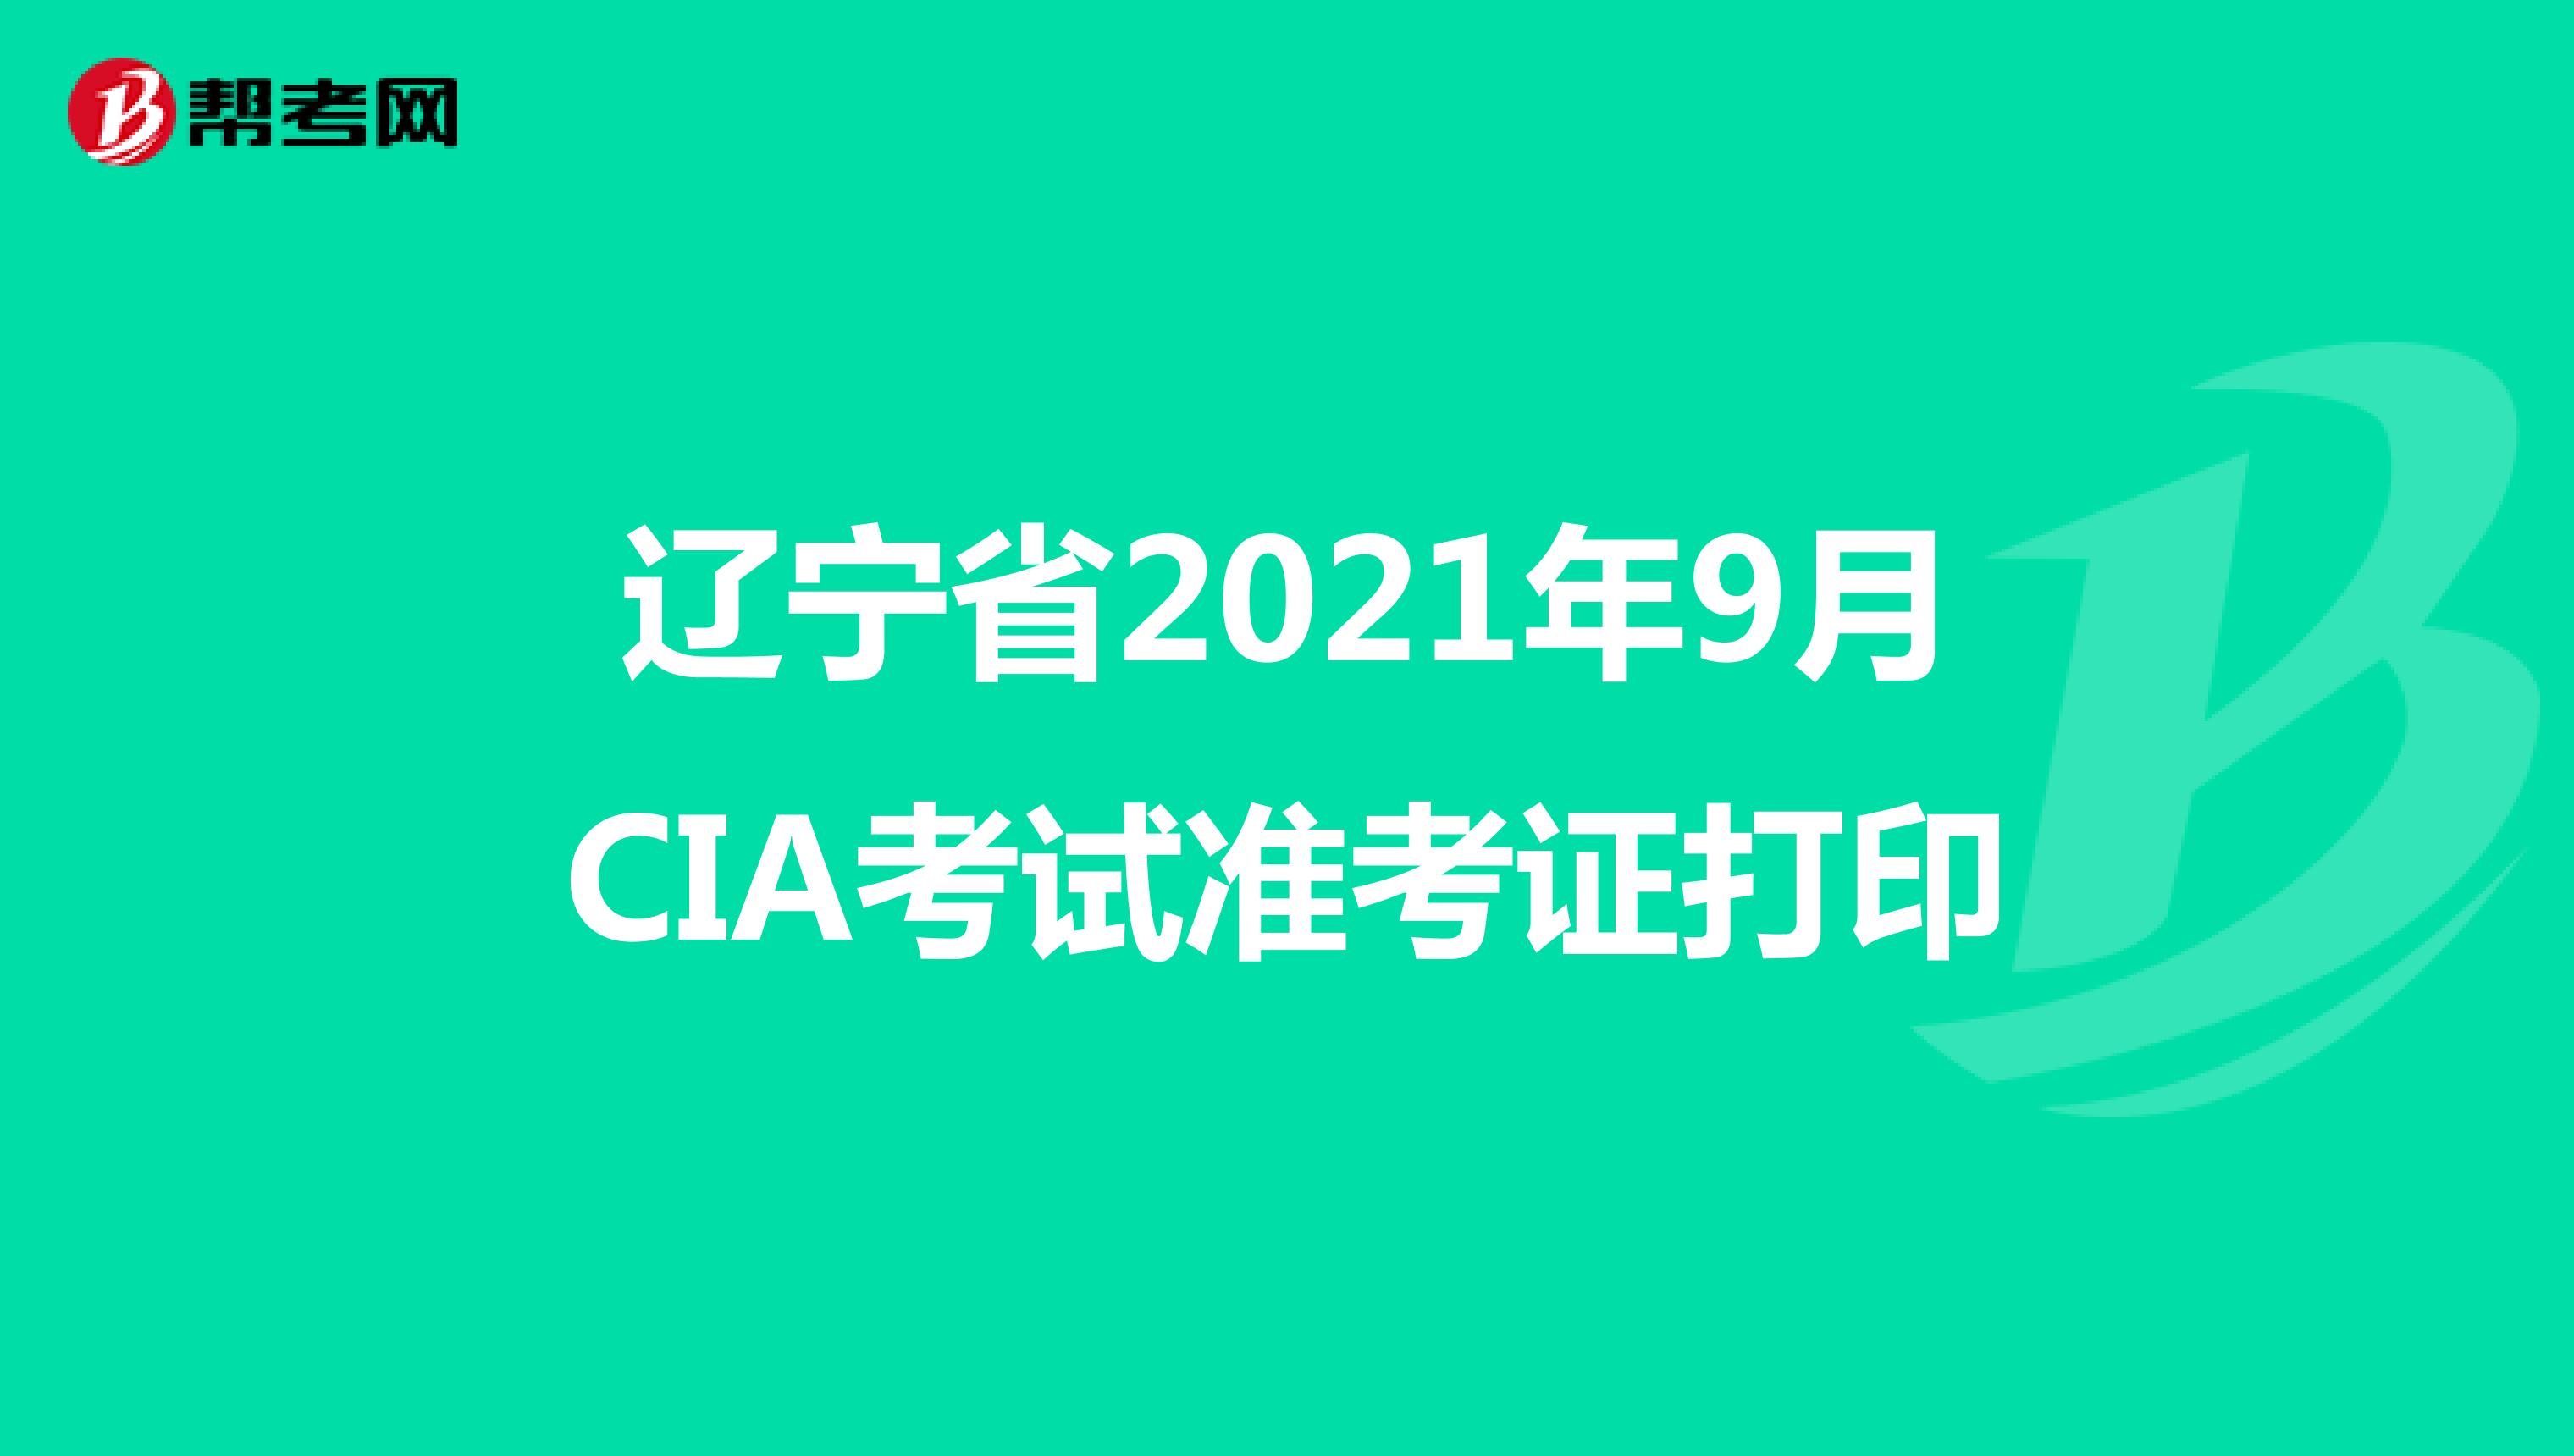 辽宁省2021年9月CIA考试准考证打印